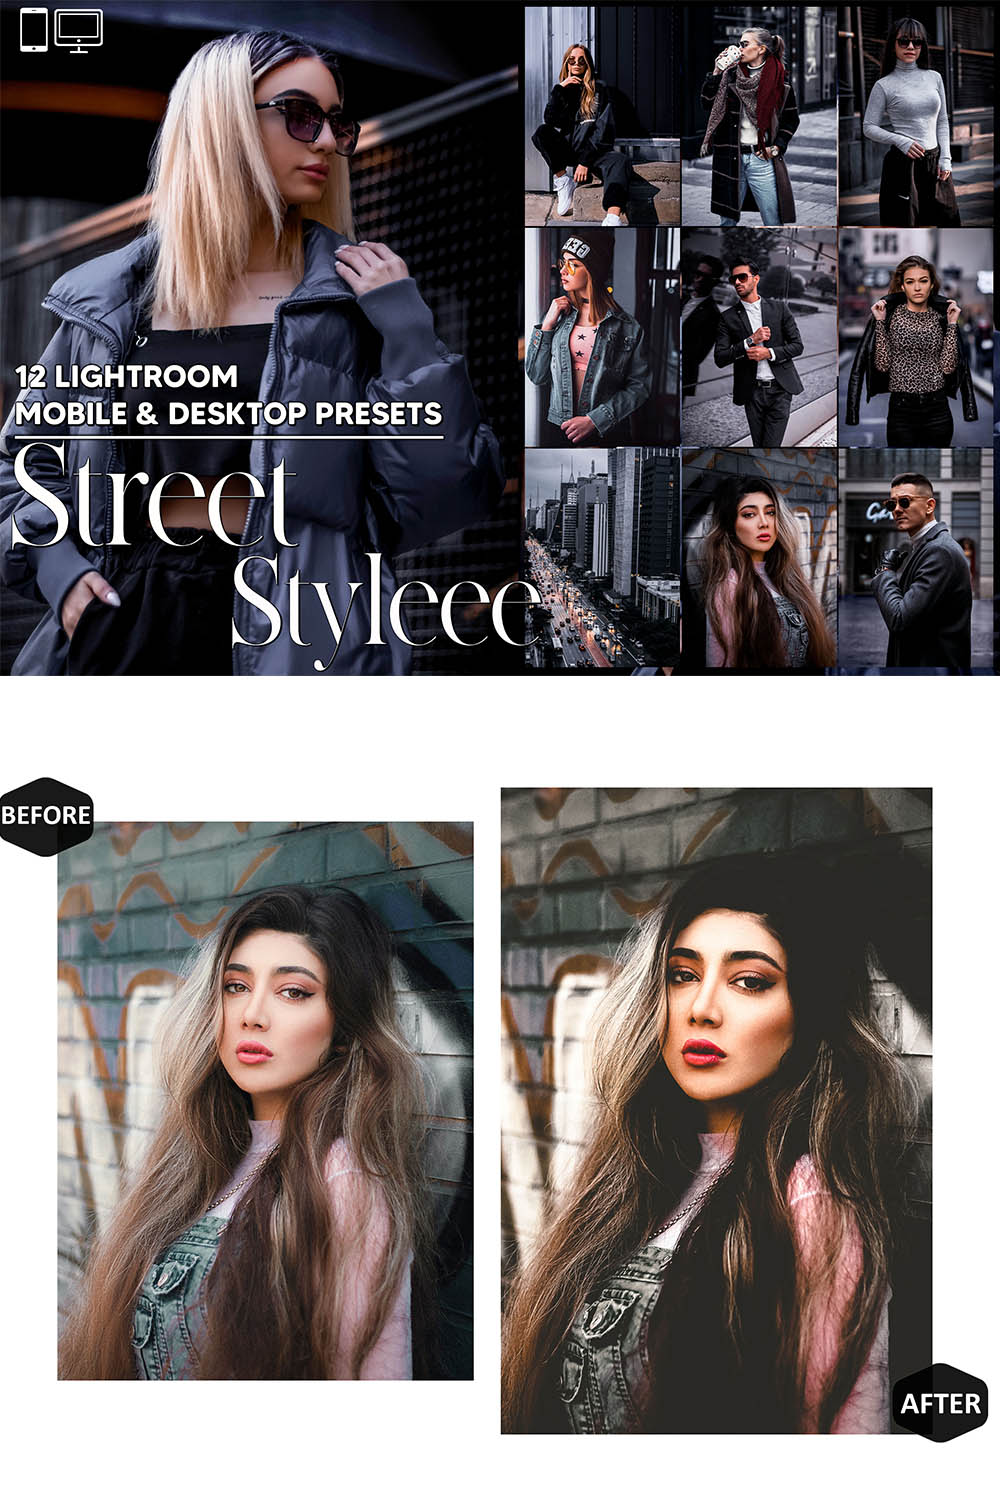 12 Street Styleee Lightroom Presets, Color Mobile Editing, Portrait Desktop LR Filter DNG Influencer Instagram Theme, Dark Hue, Blogger CC pinterest preview image.